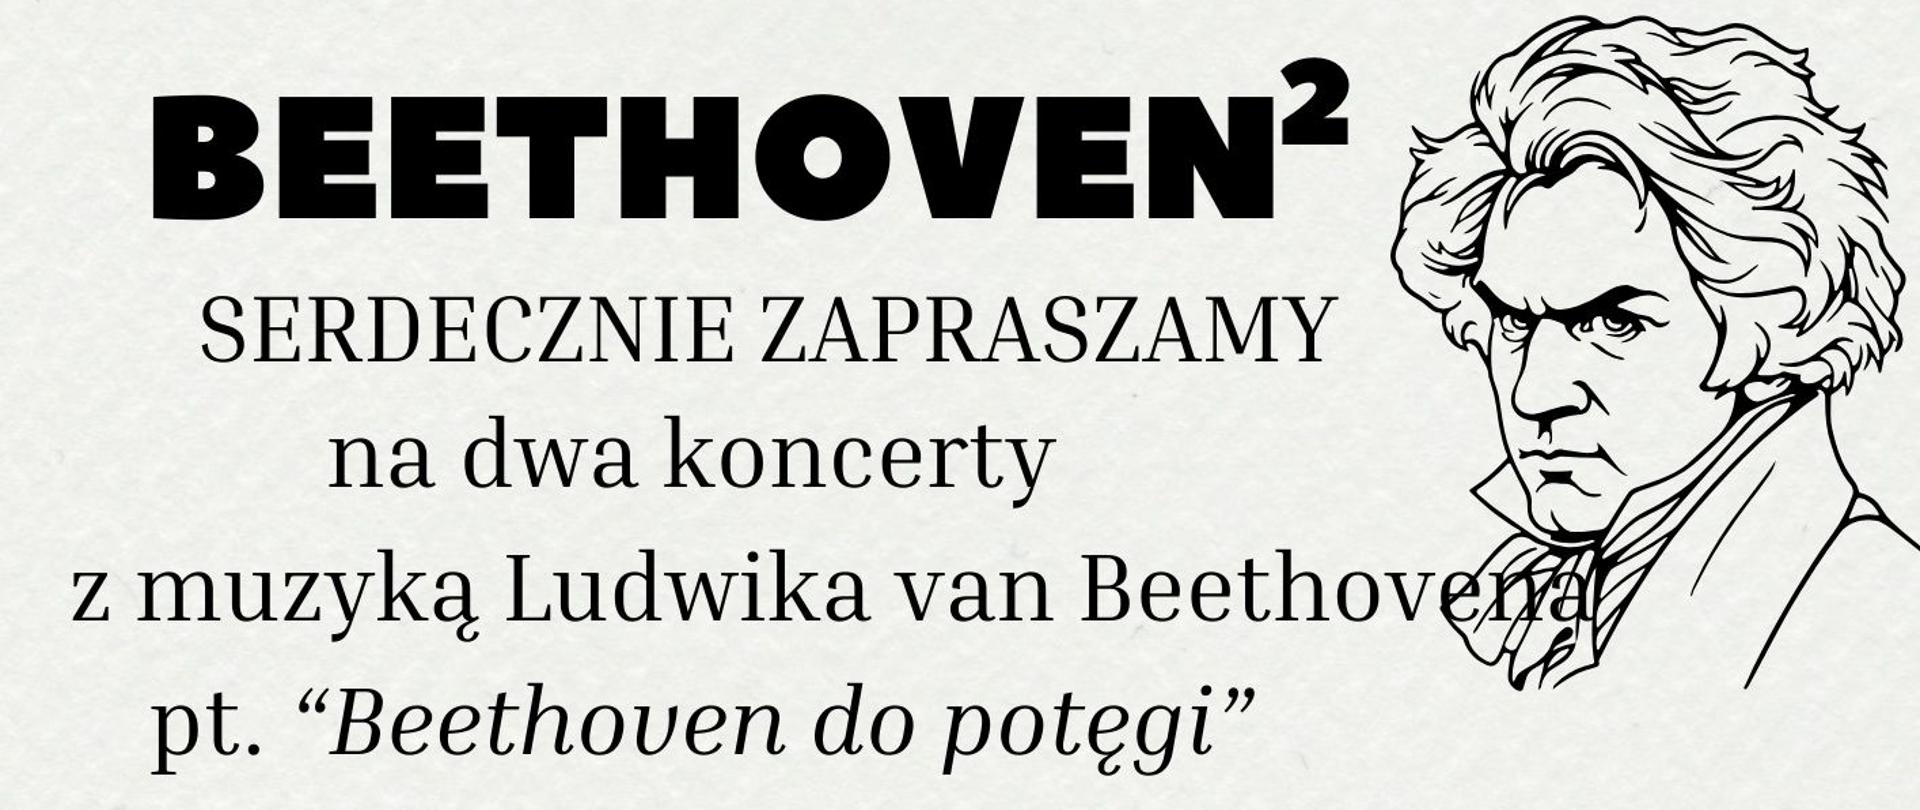 Plakat informujący o dwóch koncertach poświęconych muzyce Ludwika van Beethovena. Pierwszy odbędzie się 9 stycznia - poświęcony sonatom fortepianowym, drugi odbędzie się 23 stycznia - poświęcony muzyce smyczkowej.